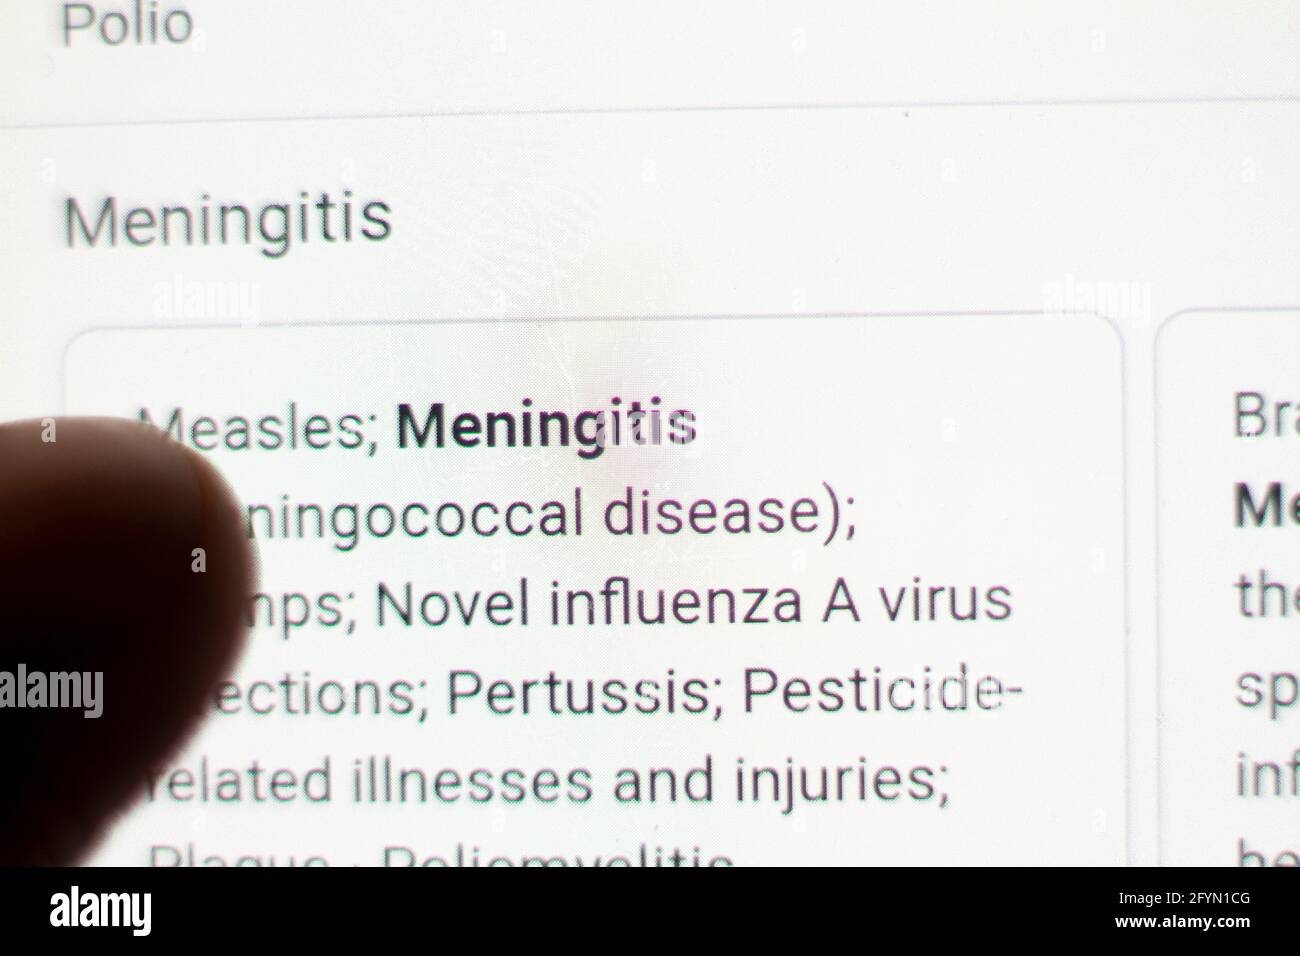 Meningitis News auf dem Handy.Handy in den Händen. Selektiver Fokus und chromatische Aberration Effekte. Stockfoto